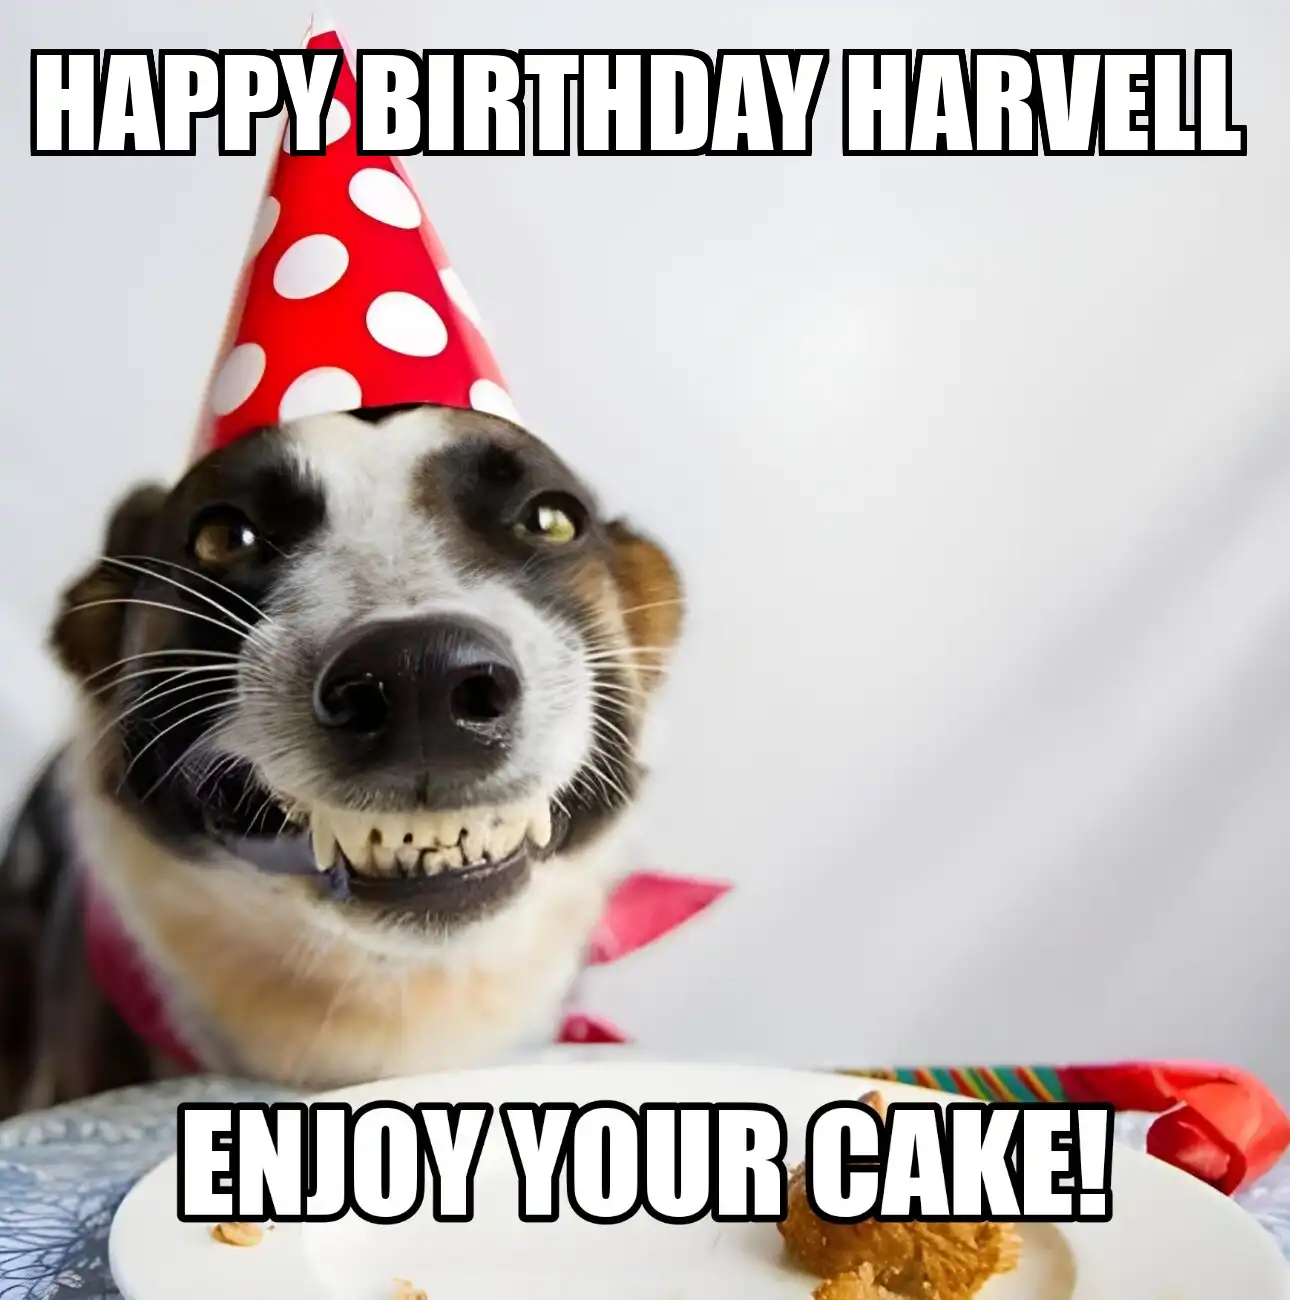 Happy Birthday Harvell Enjoy Your Cake Dog Meme